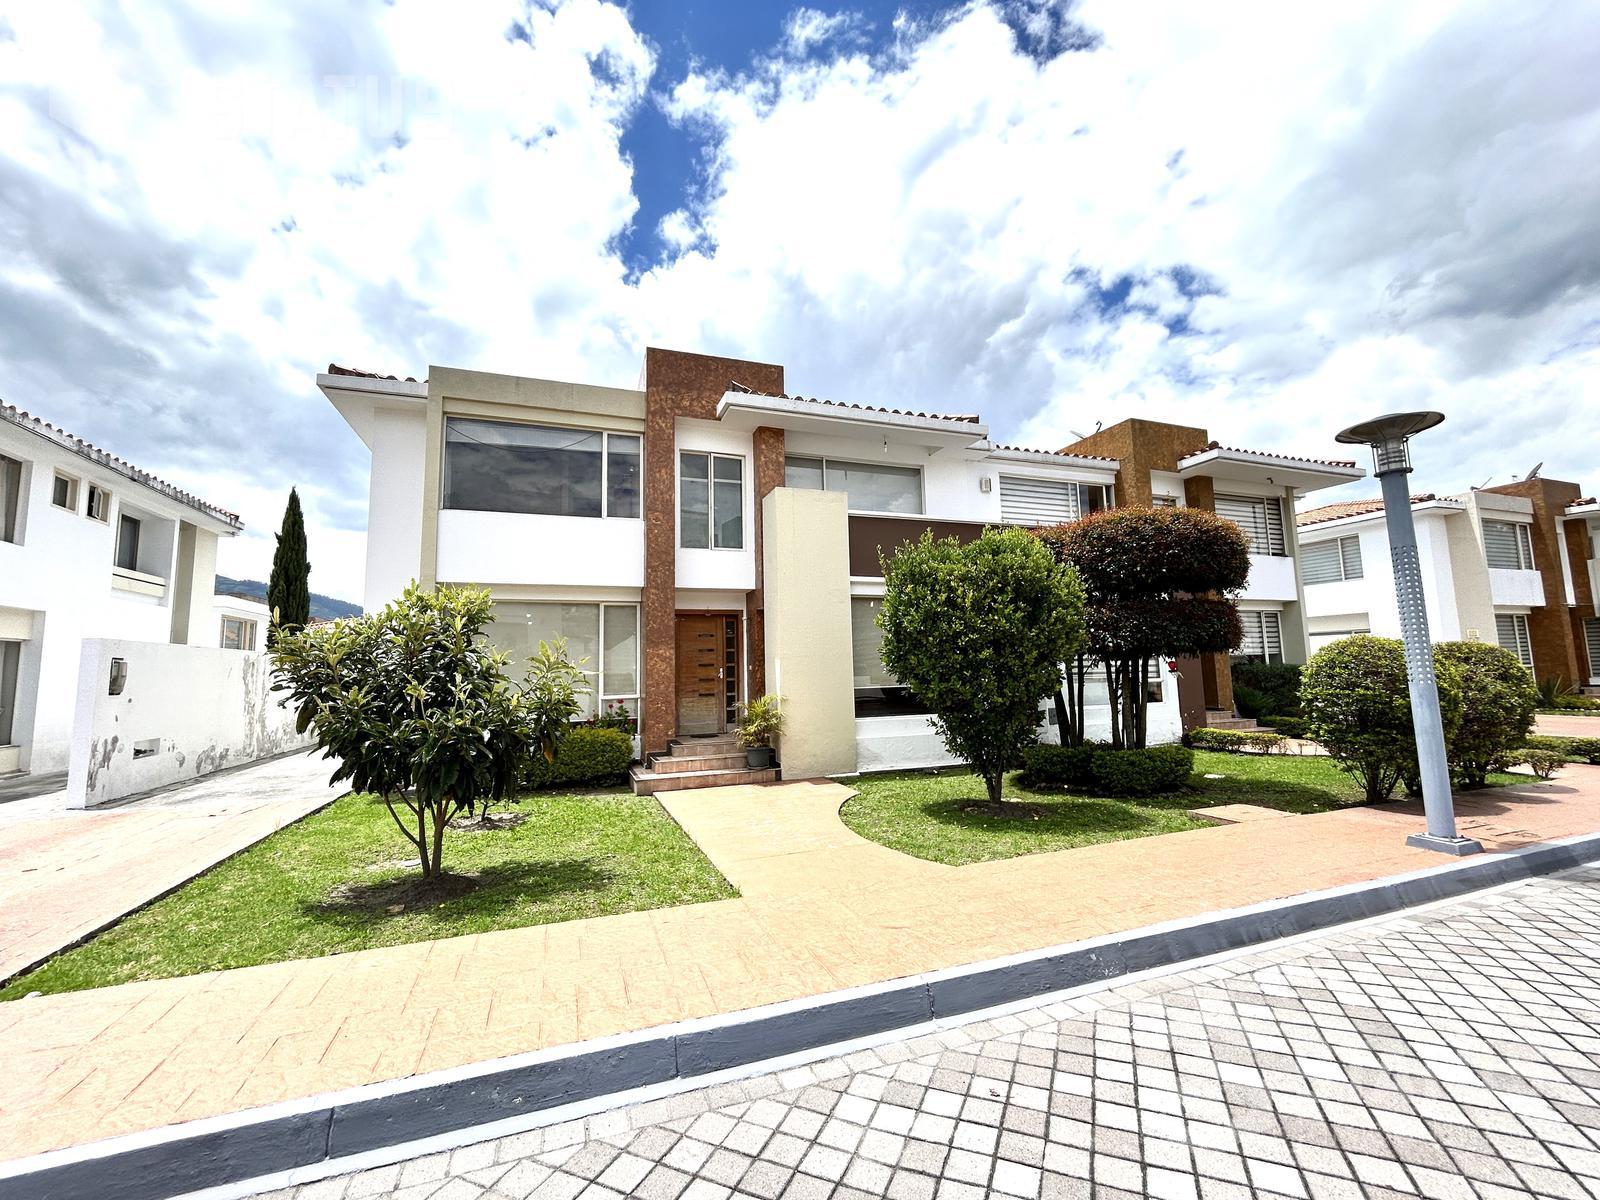 Vendo casa en conjunto sector La Armenia II - Los Chillos, 5 Dorm., 3 garajes, 234m, $175.000